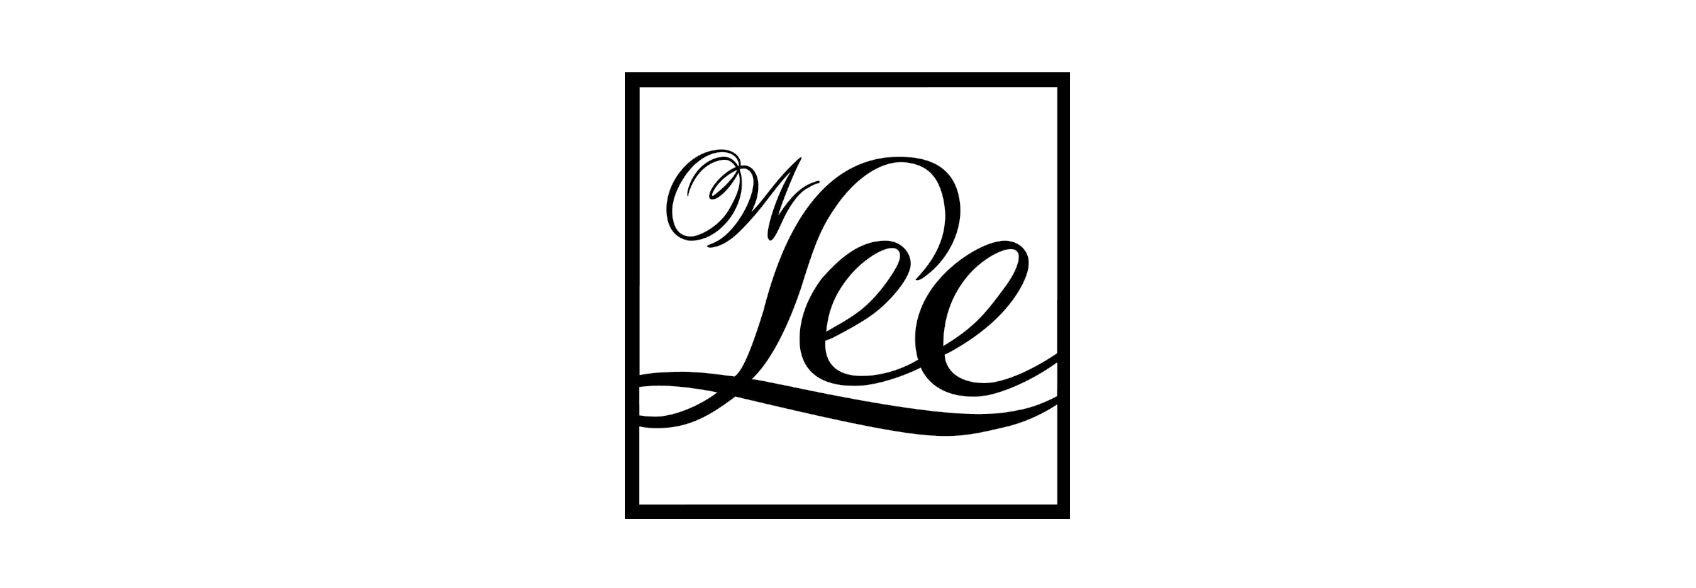 Ow Lee露台家具位于威斯康星州米德尔顿